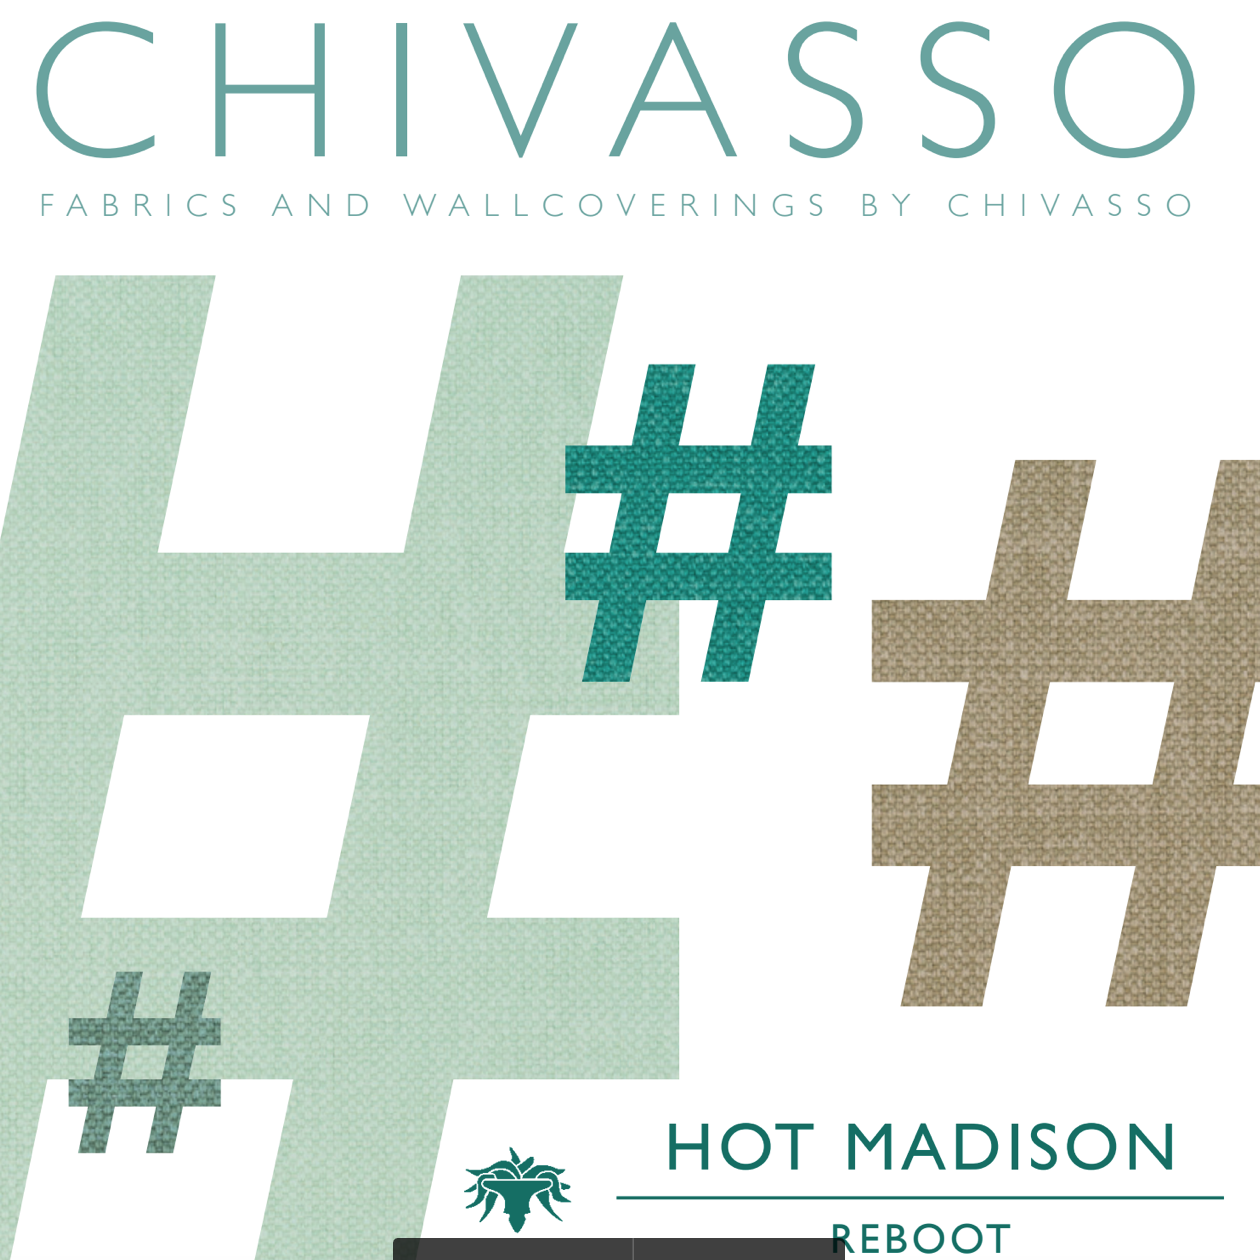 Katalóg textílií a tapiet Chivasso